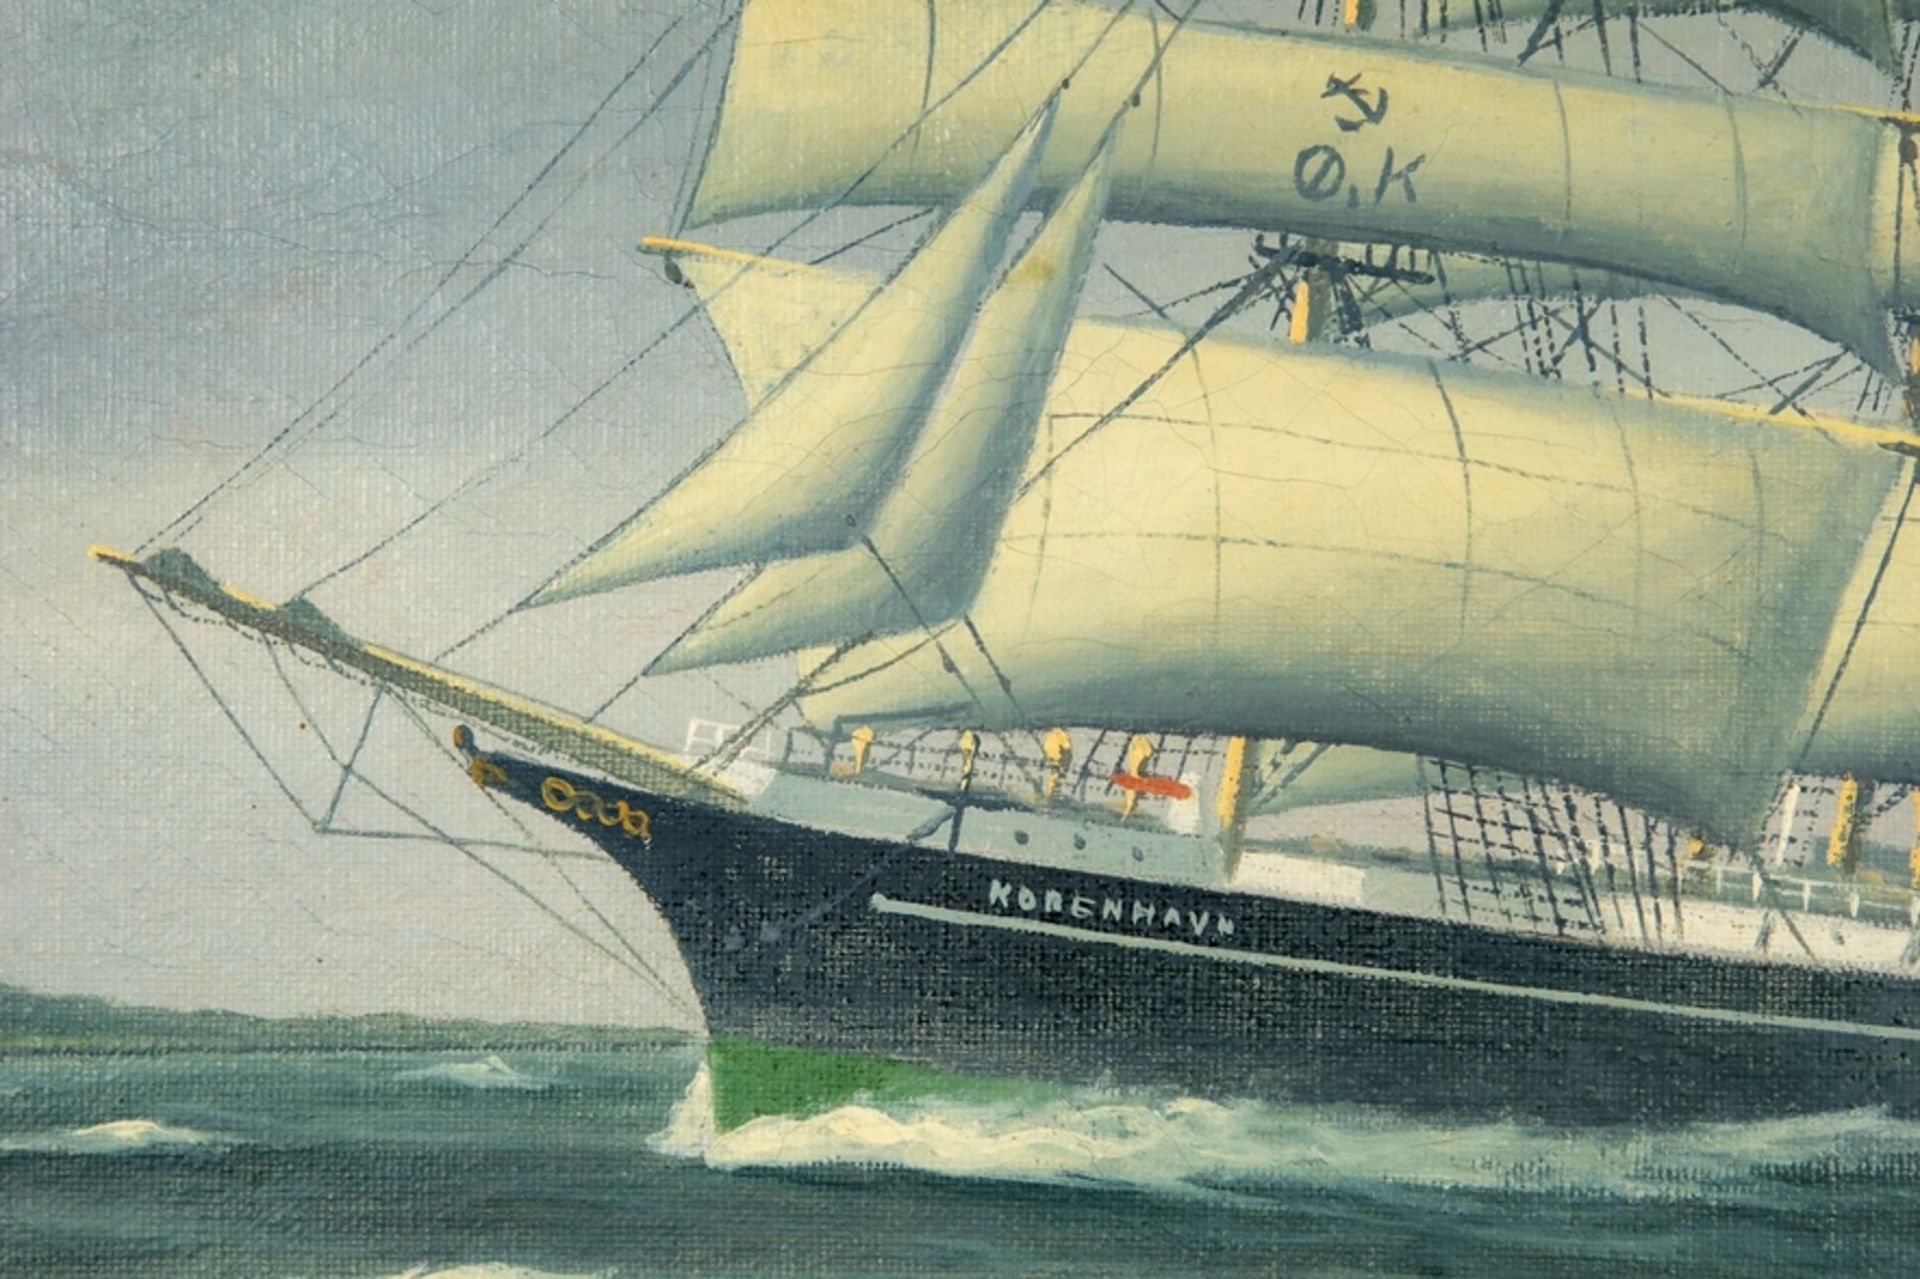 Kapitänsbild der stählernen Fünfmastbark "KOBENHAVN", einem dänischen Segelschulschiff, welches 192 - Image 4 of 12